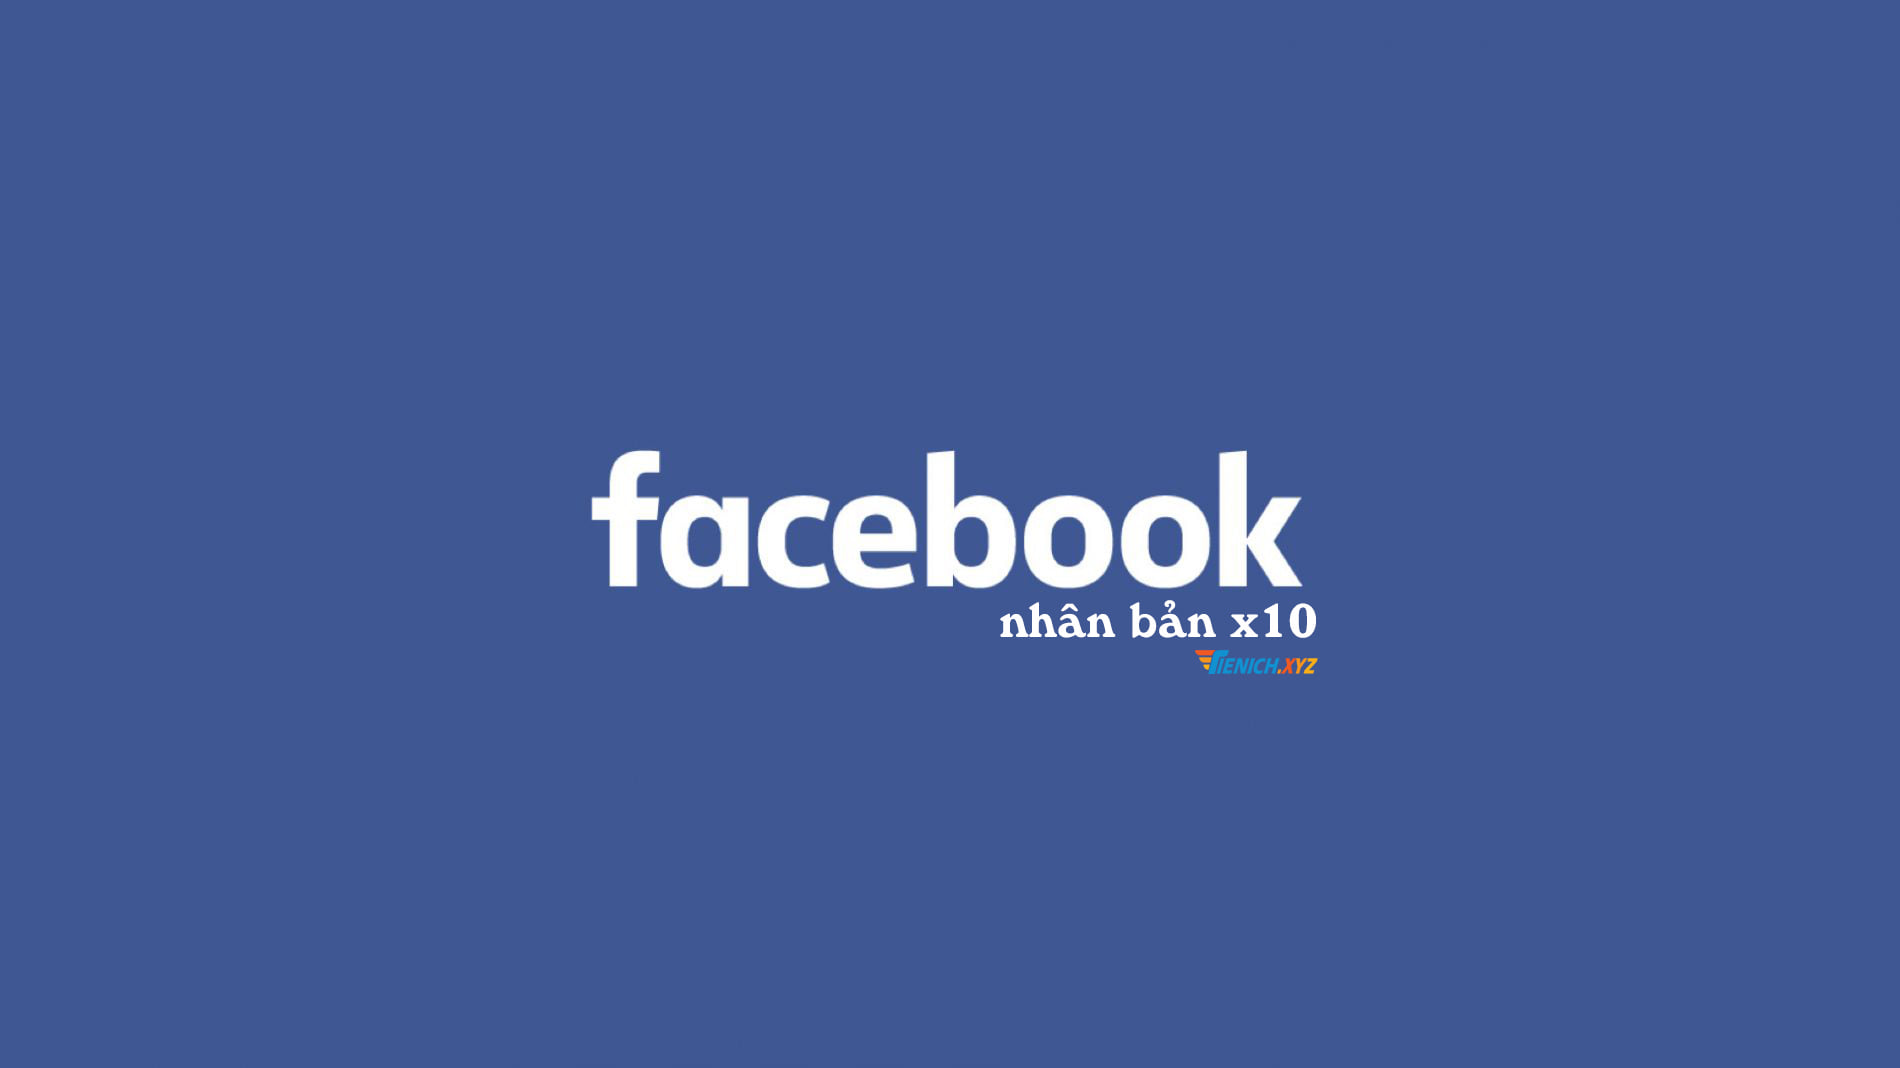 Download Facebook Nhân Bản x10 - Tăng like, tương tác